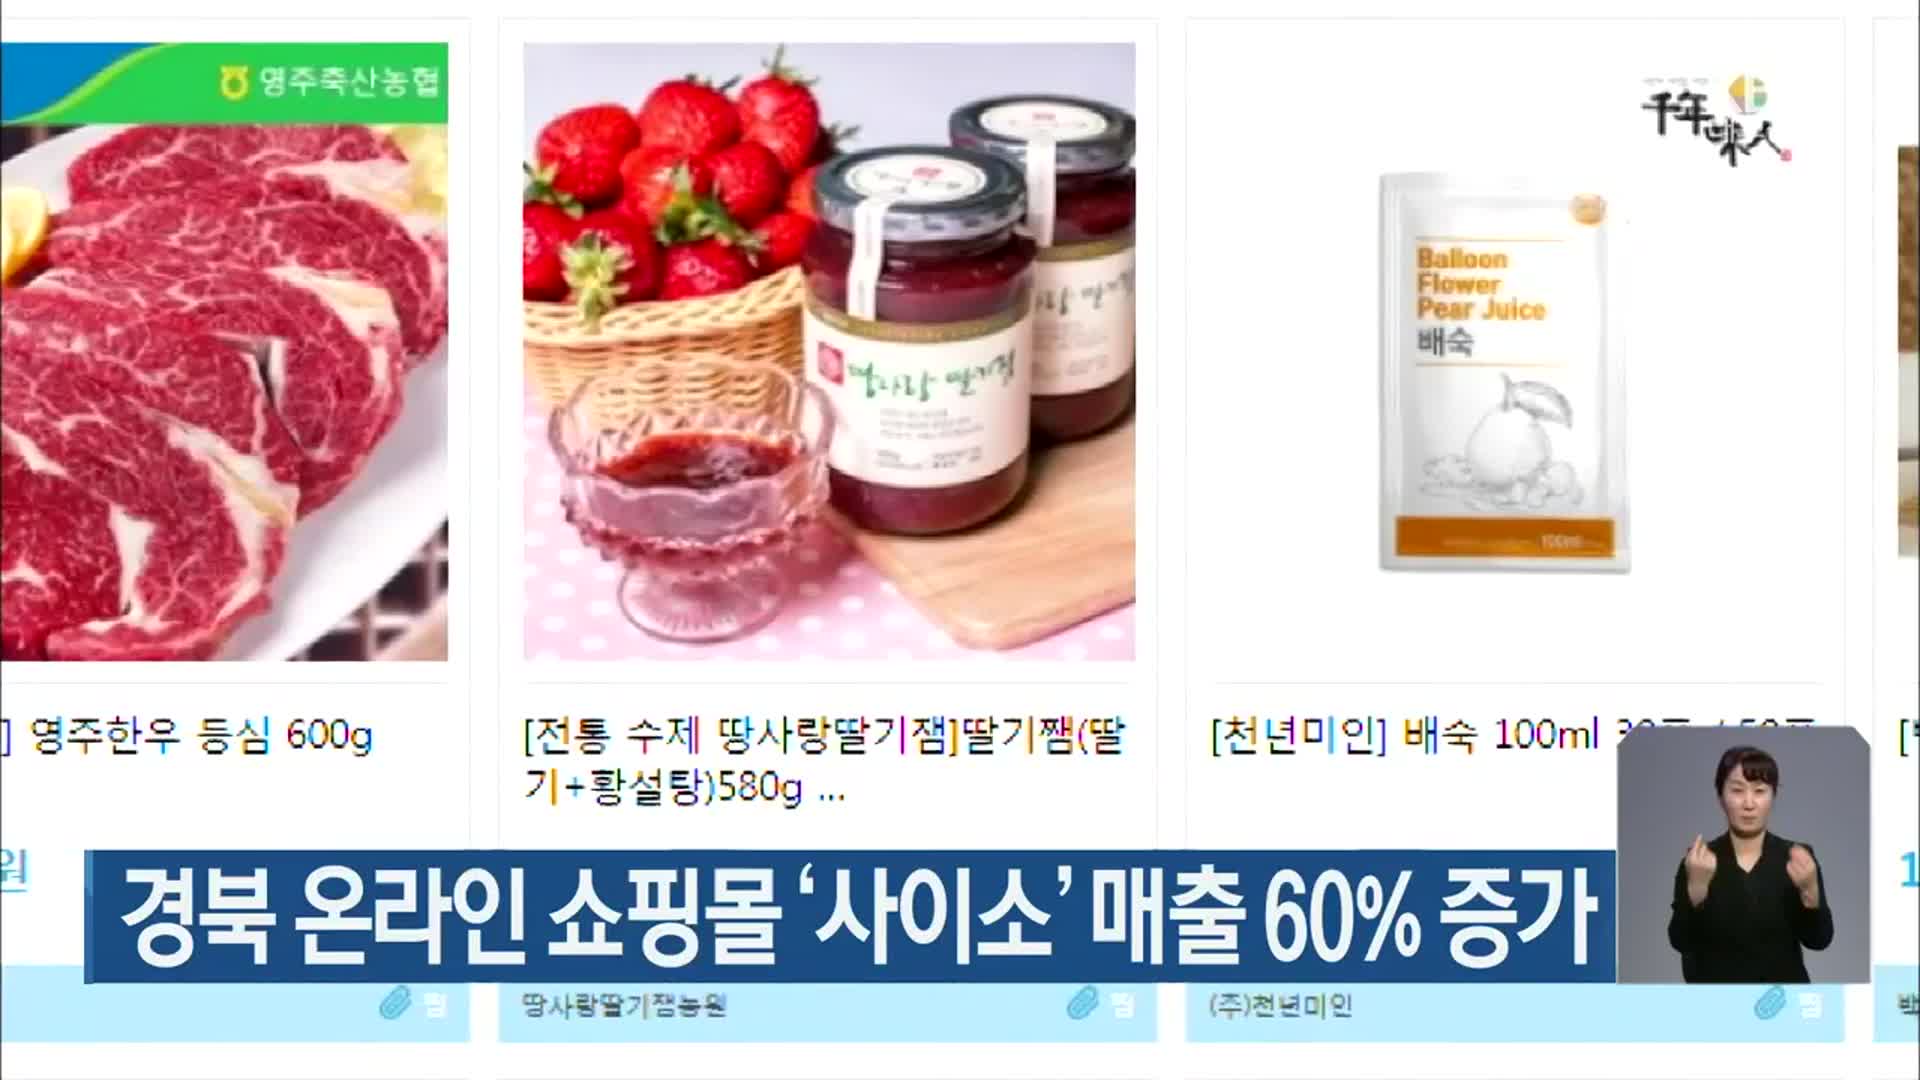 경북 온라인 쇼핑몰 ‘사이소’ 매출 60% 증가